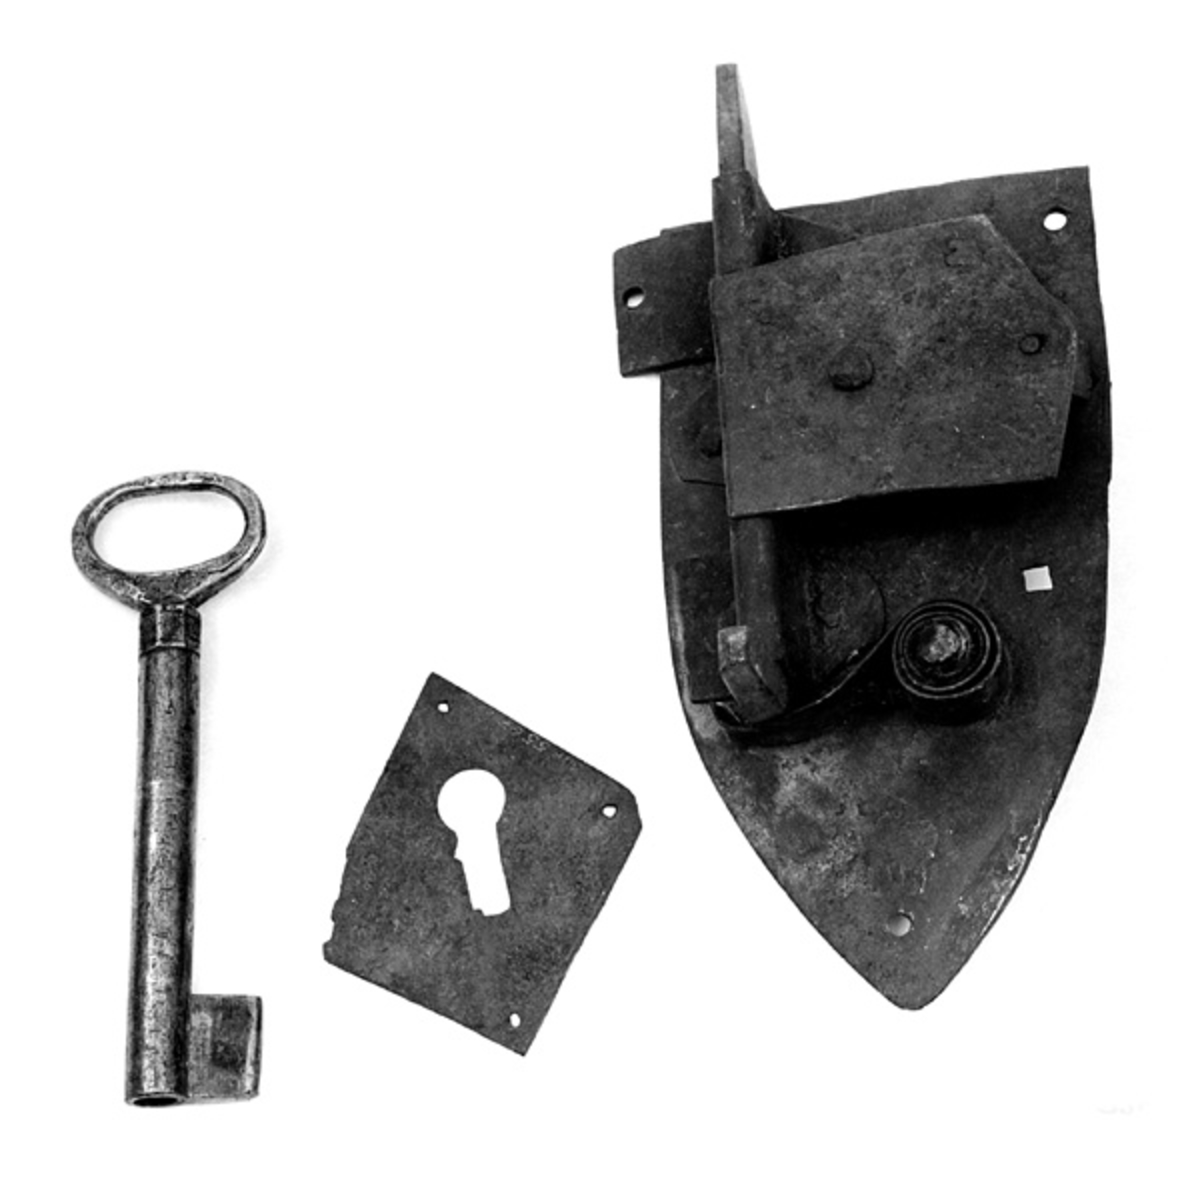 Både låsen og nøkkelen er hjemmesmidd. Det er usikkert hvem som har lagd låsen, men 
nøkkelen er smidd av Oluf Andersen, Risberget (f. 1836). 
